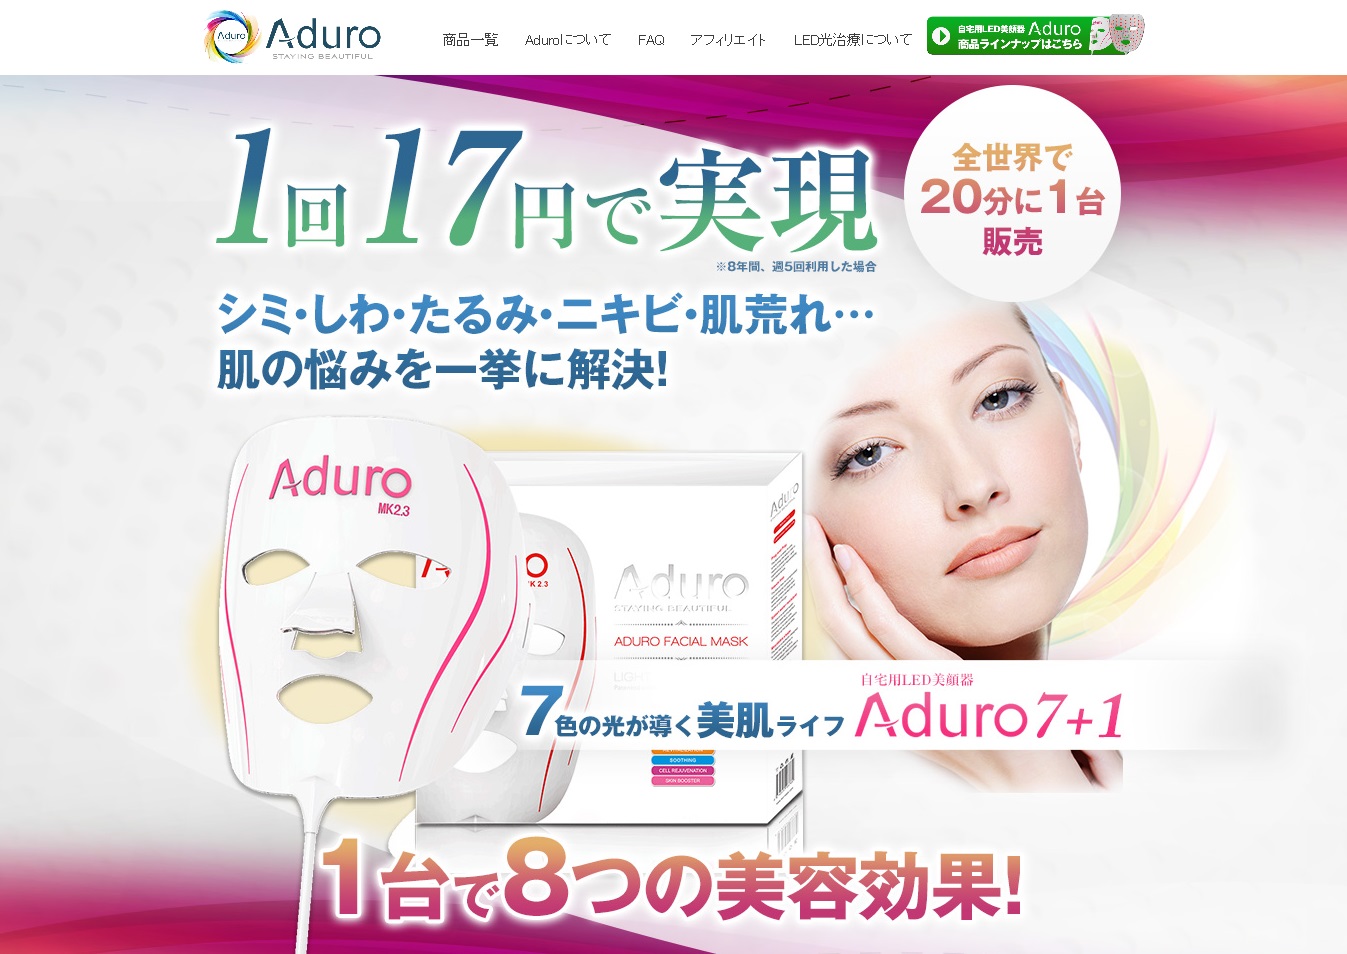 Aduro LED Mask Japan